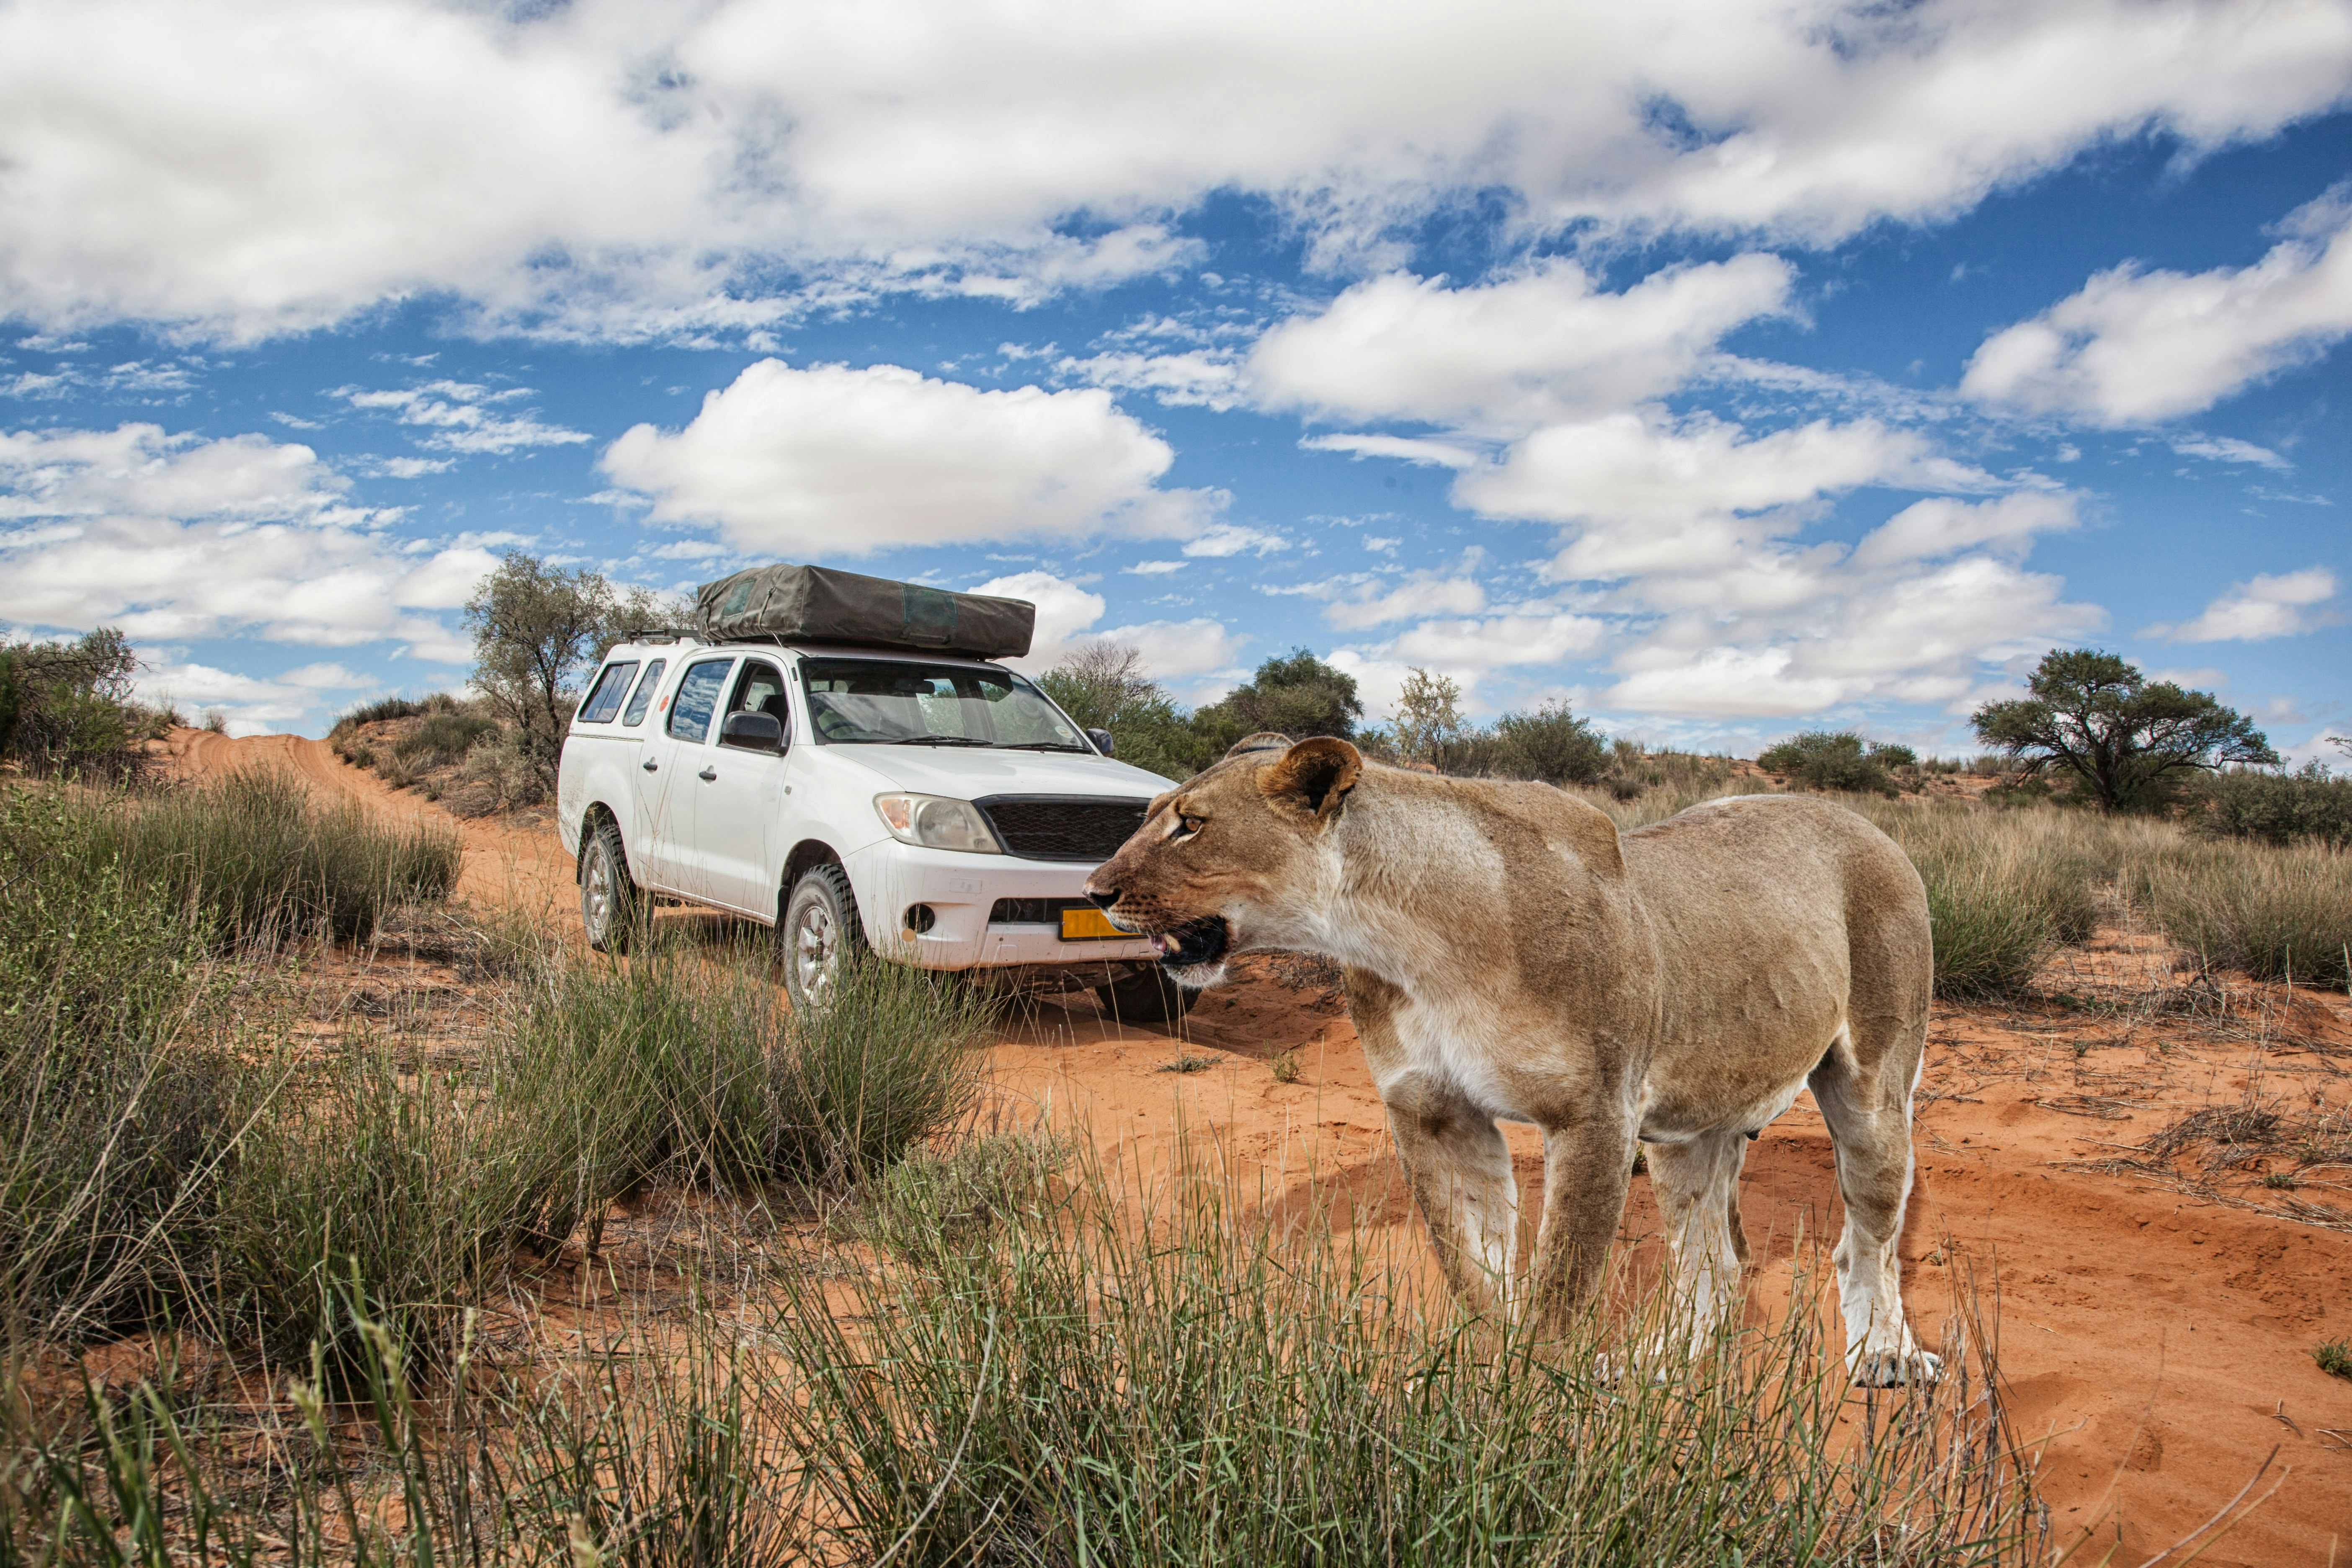 lioness in front of a 4x4 safari car crossing a dirt road in Kalahari desert, Kgalagadi Transfrontier Park, Botswana, Africa